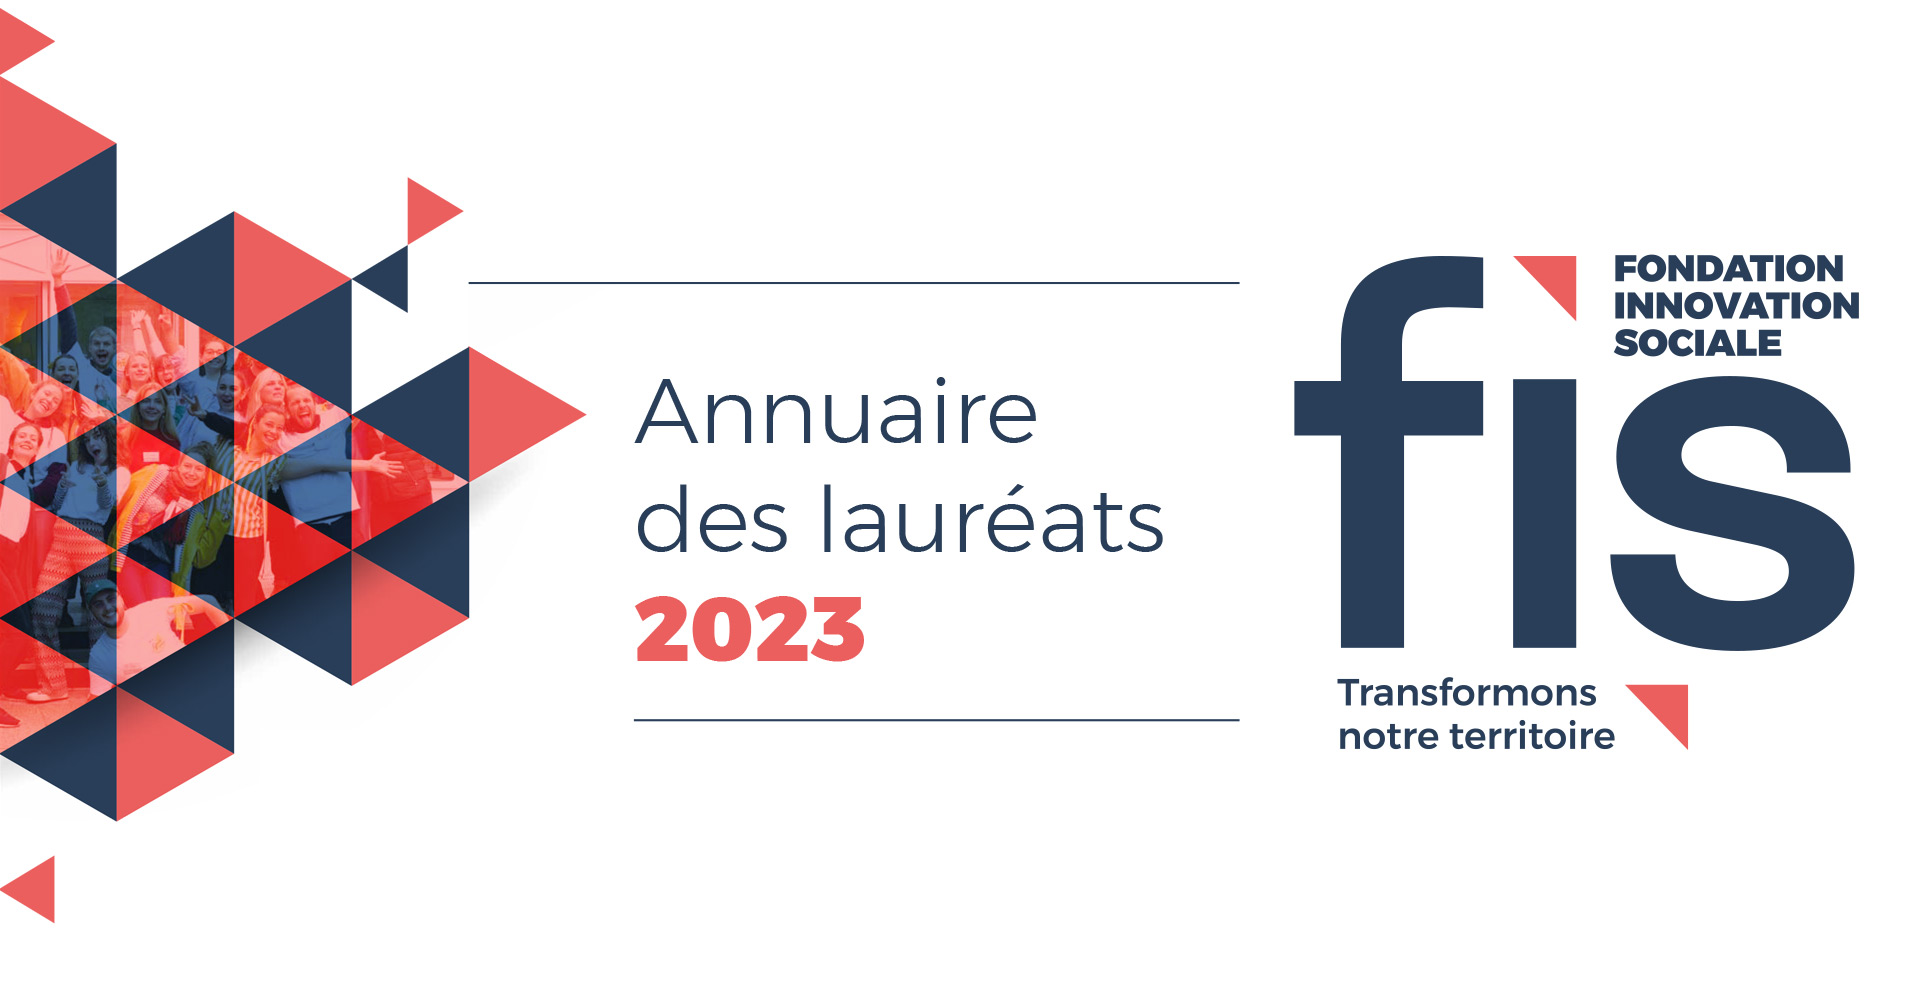 Annuaire des lauréats 2023 de la Fondation innovation sociale, créée à l’initiative de la Métropole de Lyon, la Fondation d’entreprise Caisse d’Épargne Rhône-Alpes et la Banque des Territoires